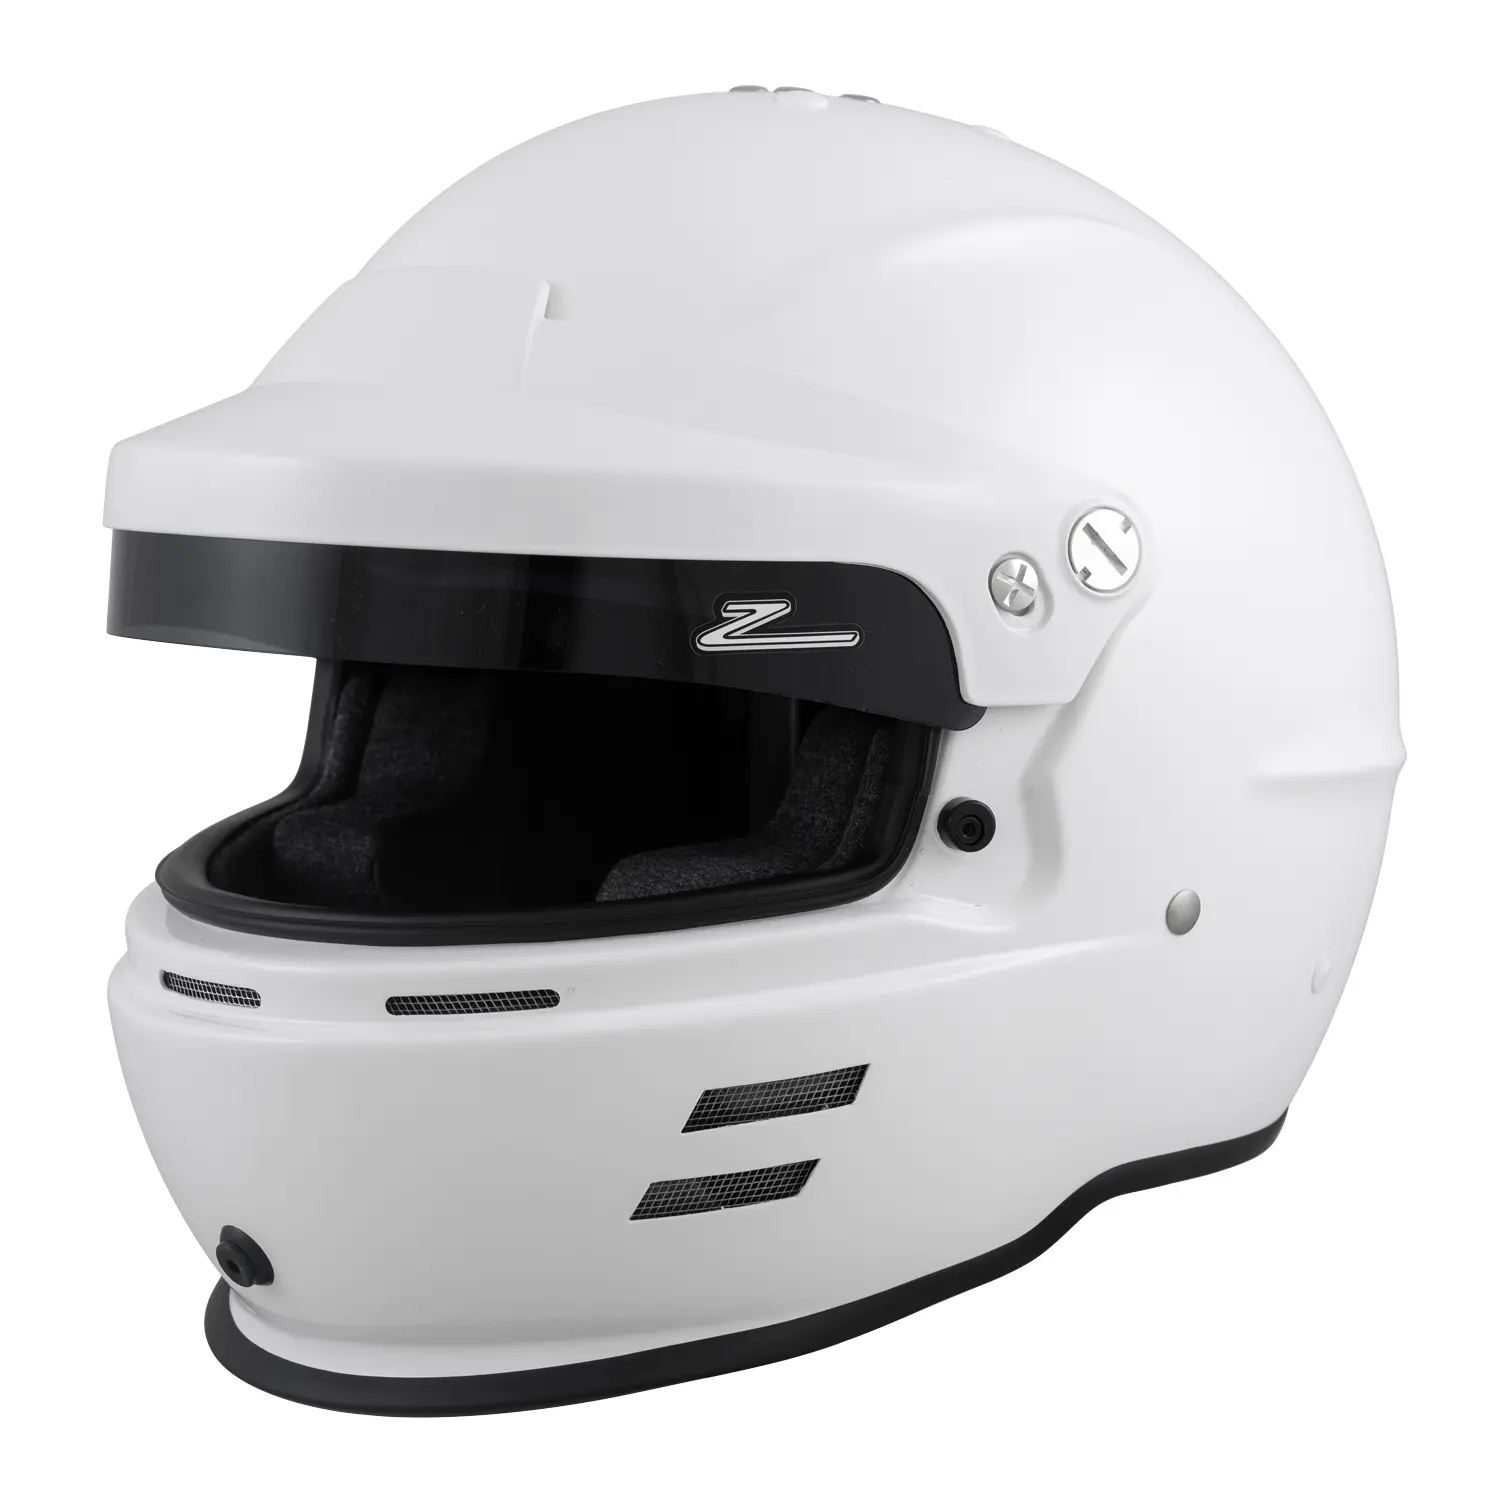 RZ-60V Helmet